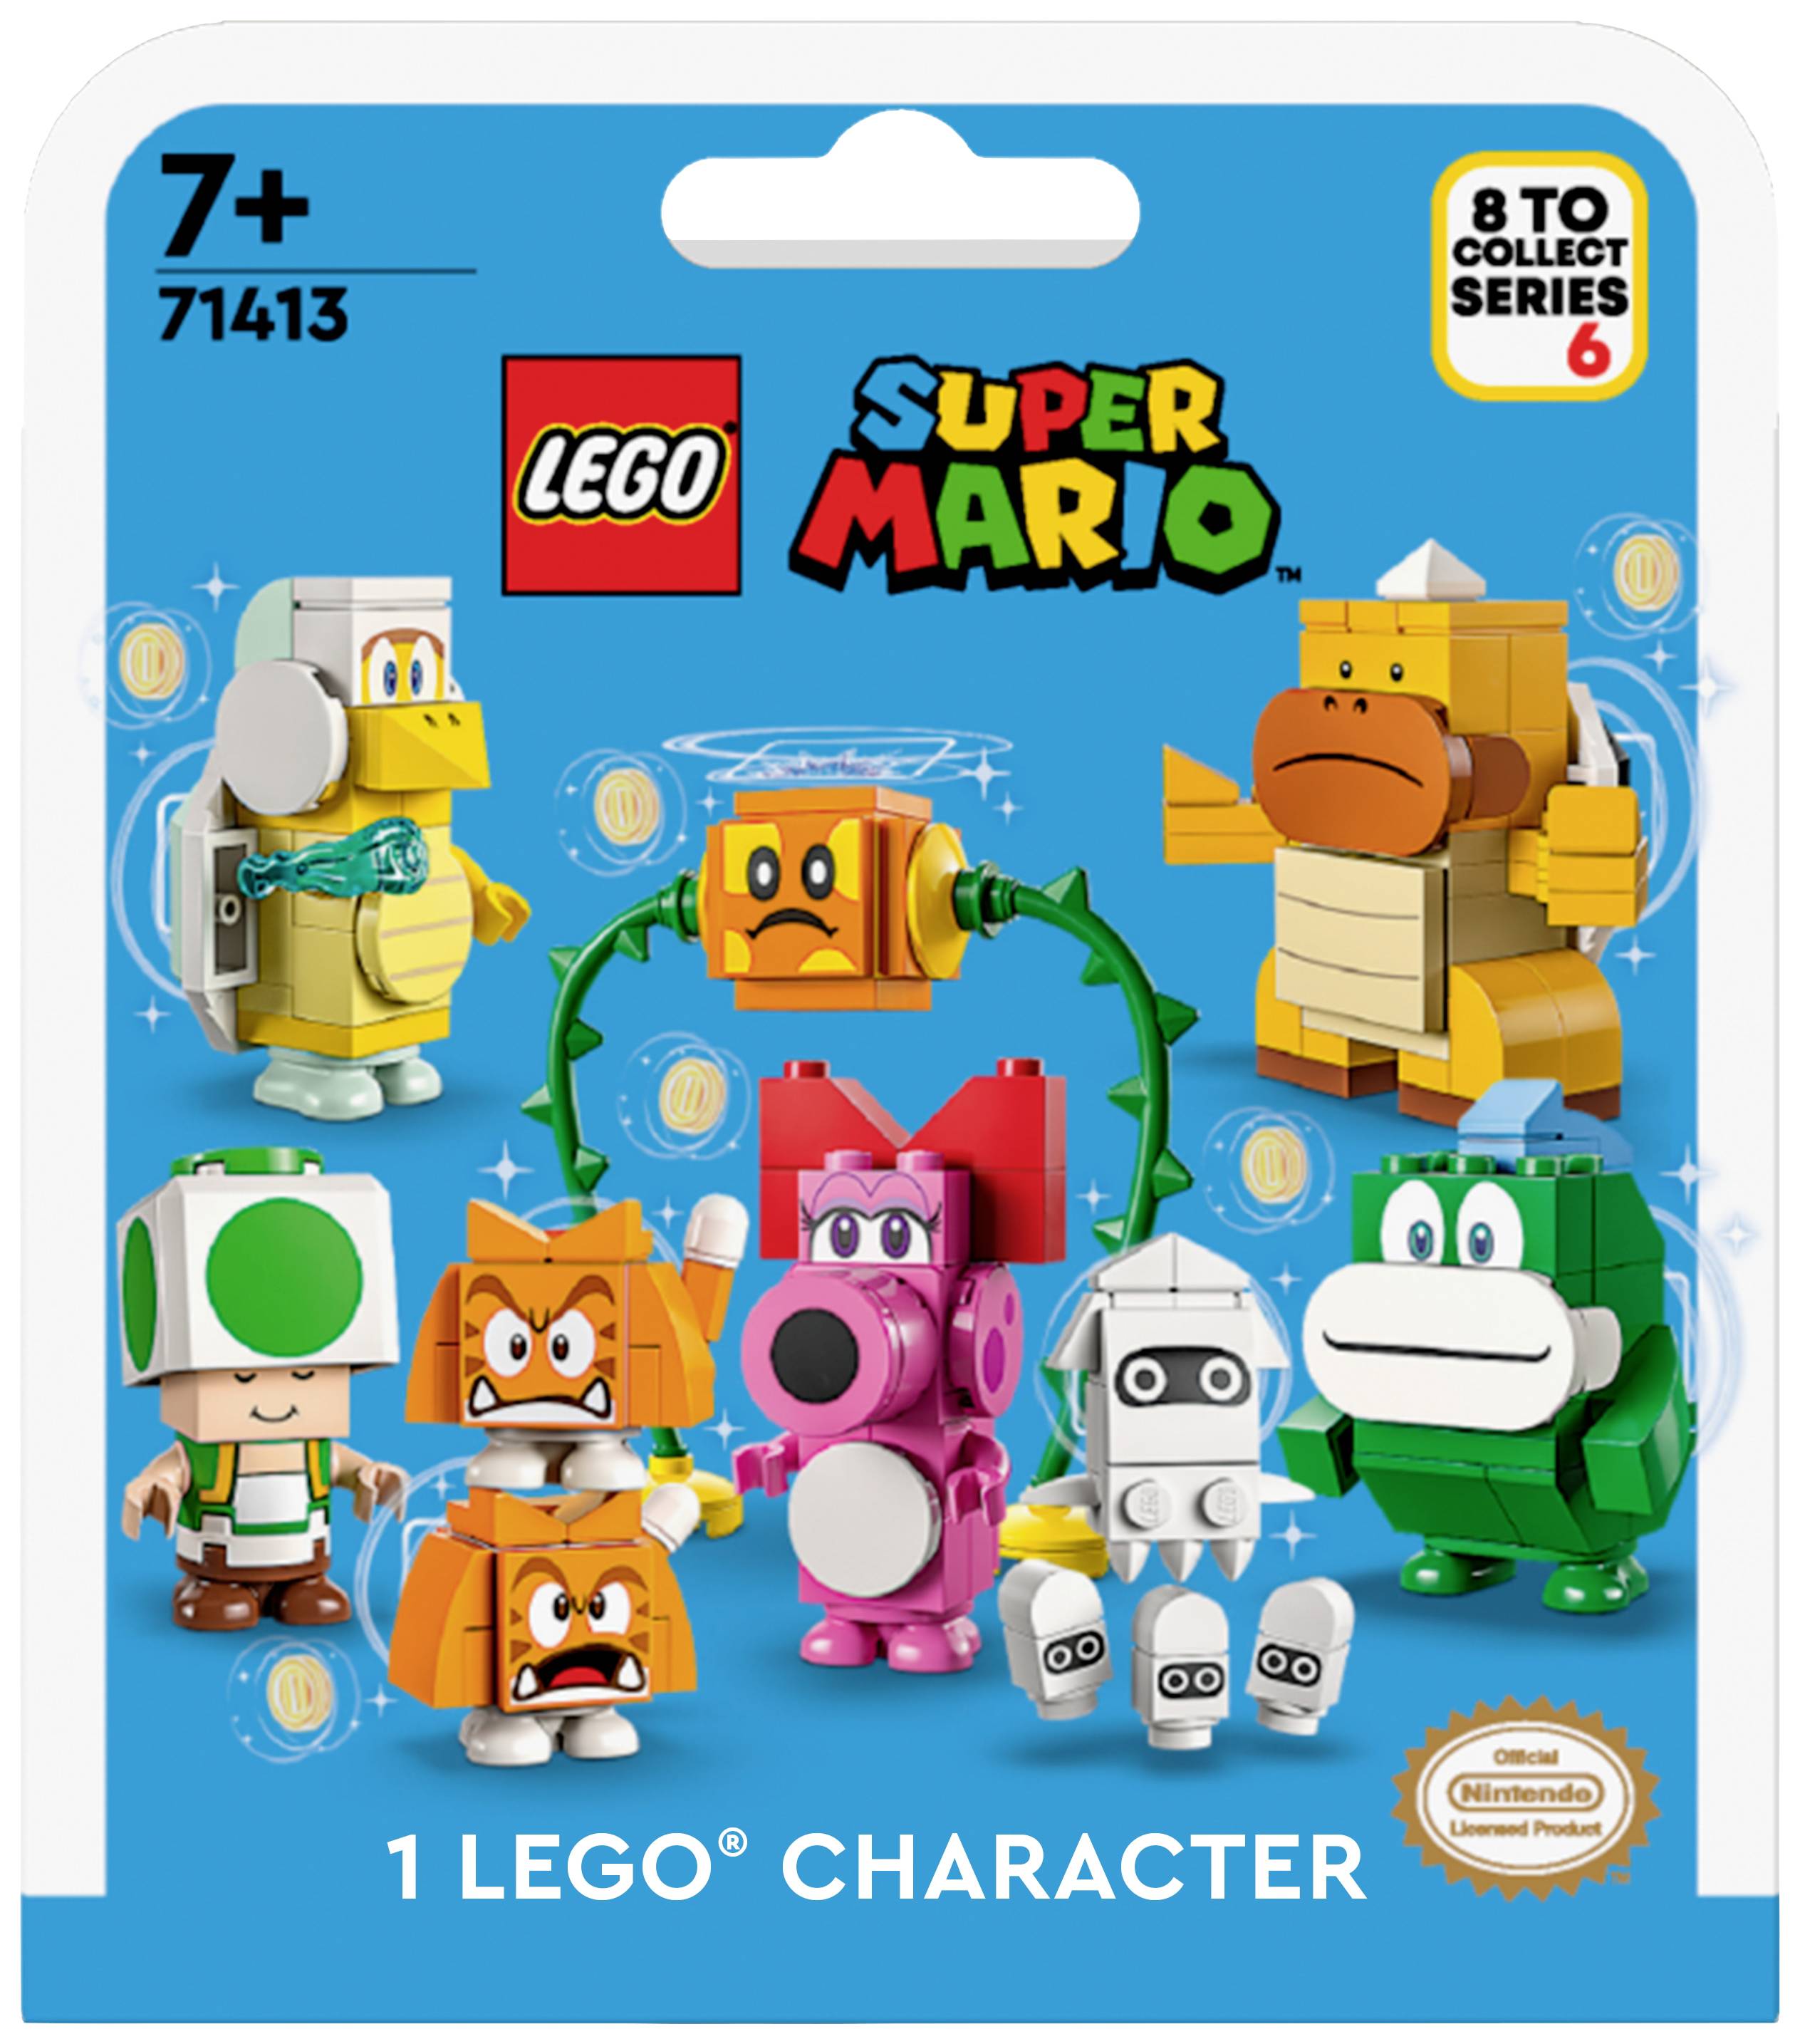 organisere span national 71413 LEGO® Super Mario™ Mario-karakterer serie 6 købe